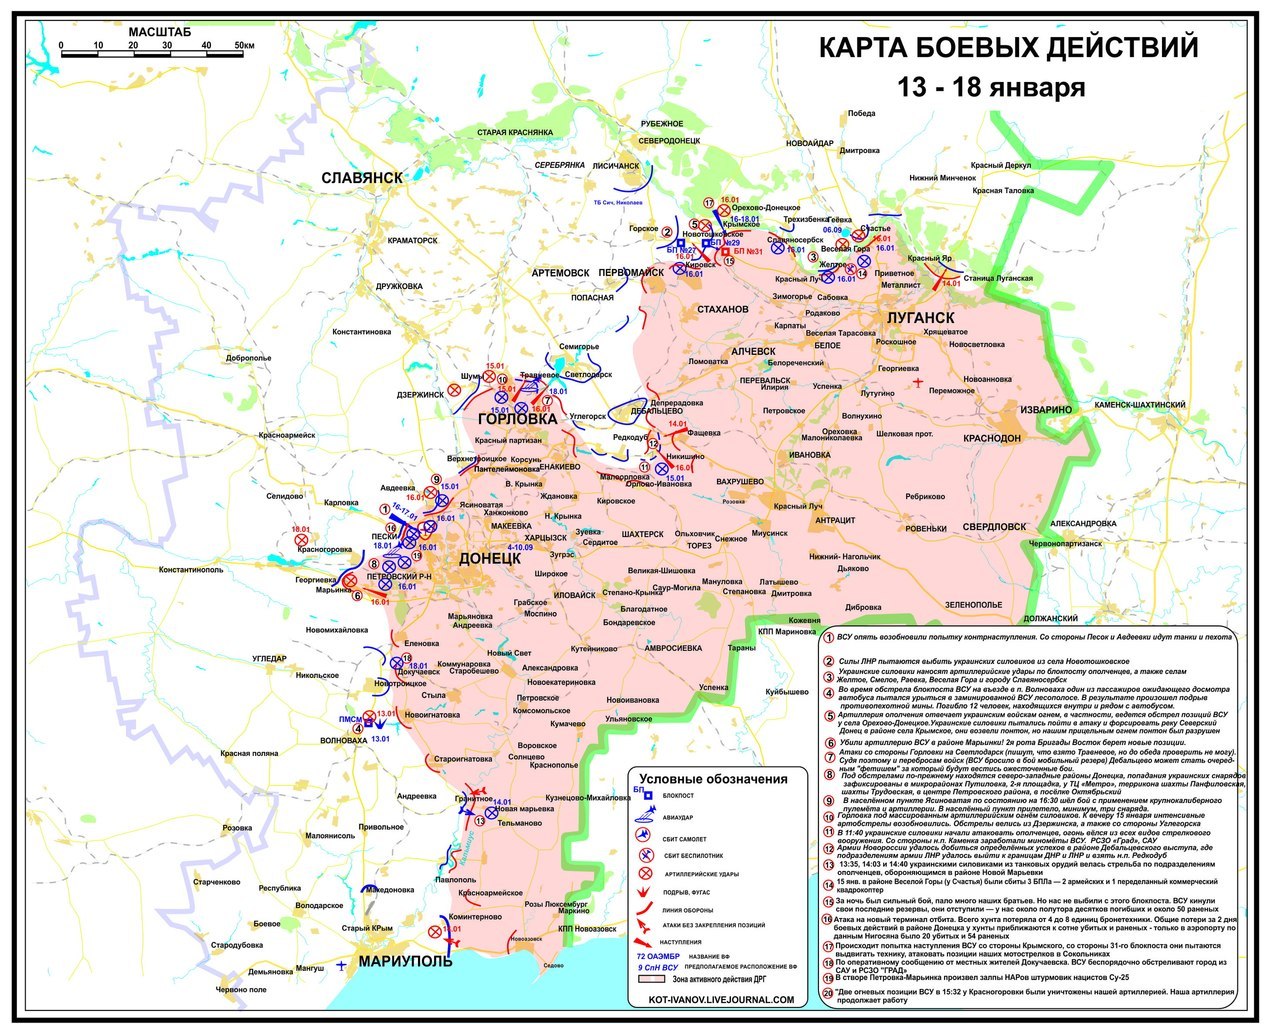 Карта боевых действий в Новороссии  13-18 января